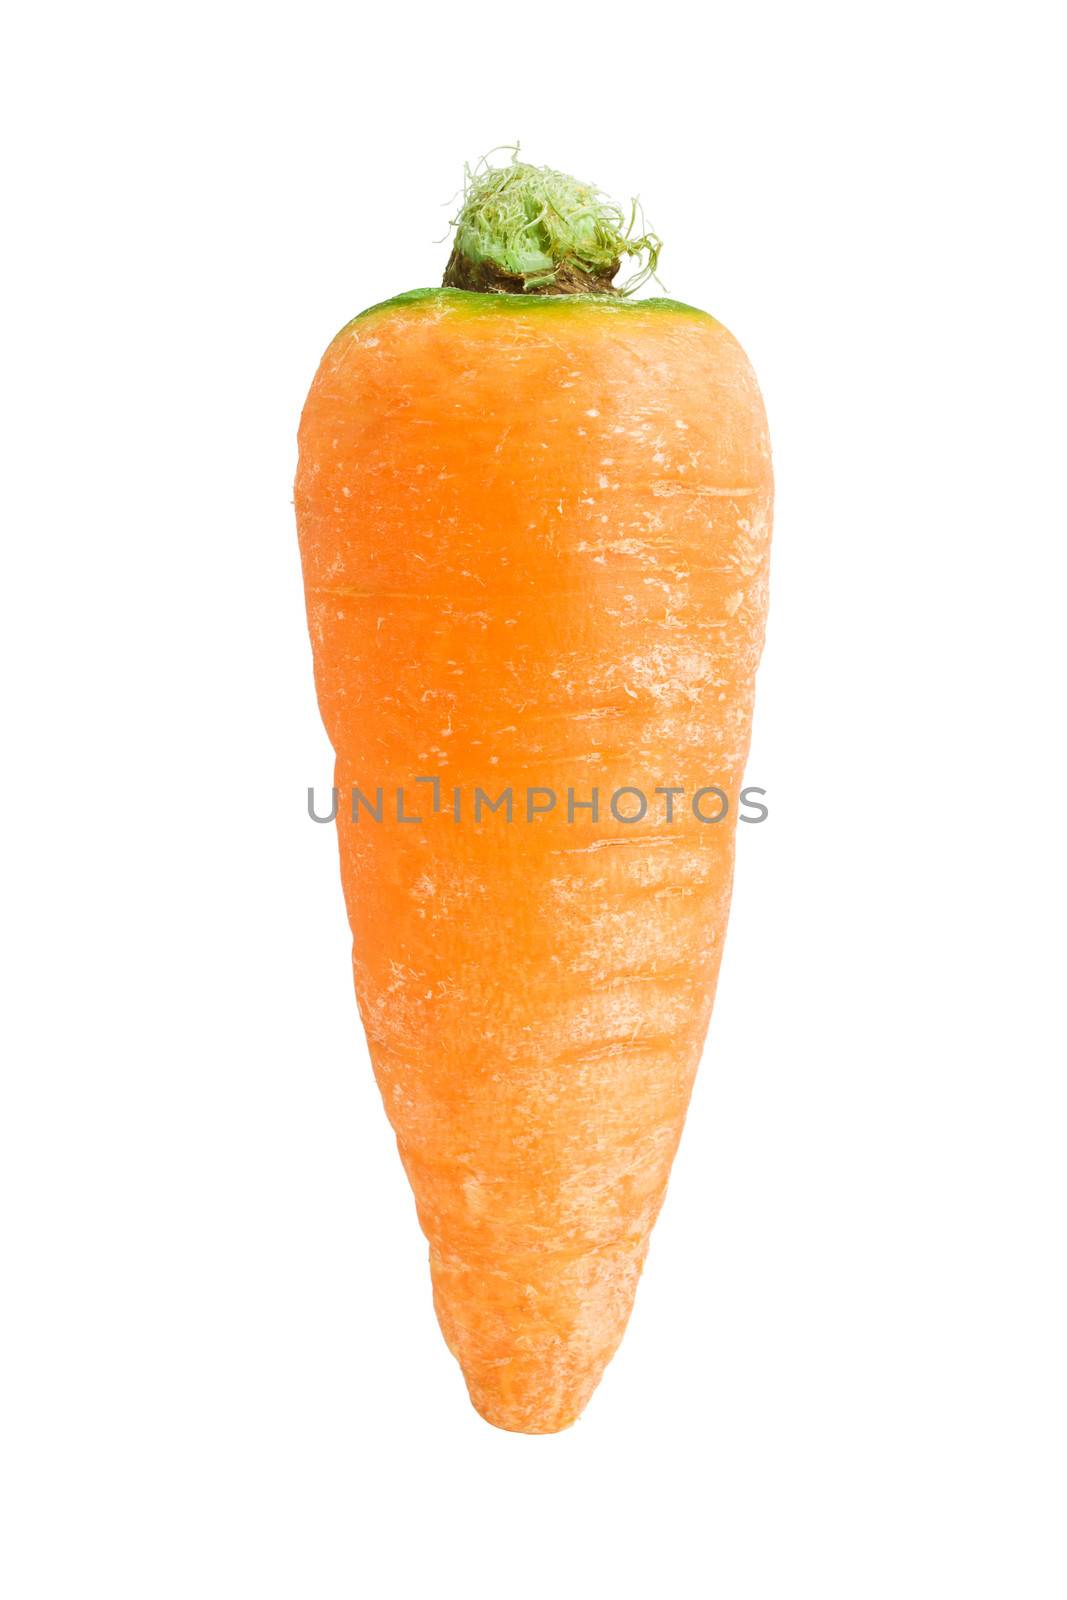 Fresh orange carrot isolated on white background